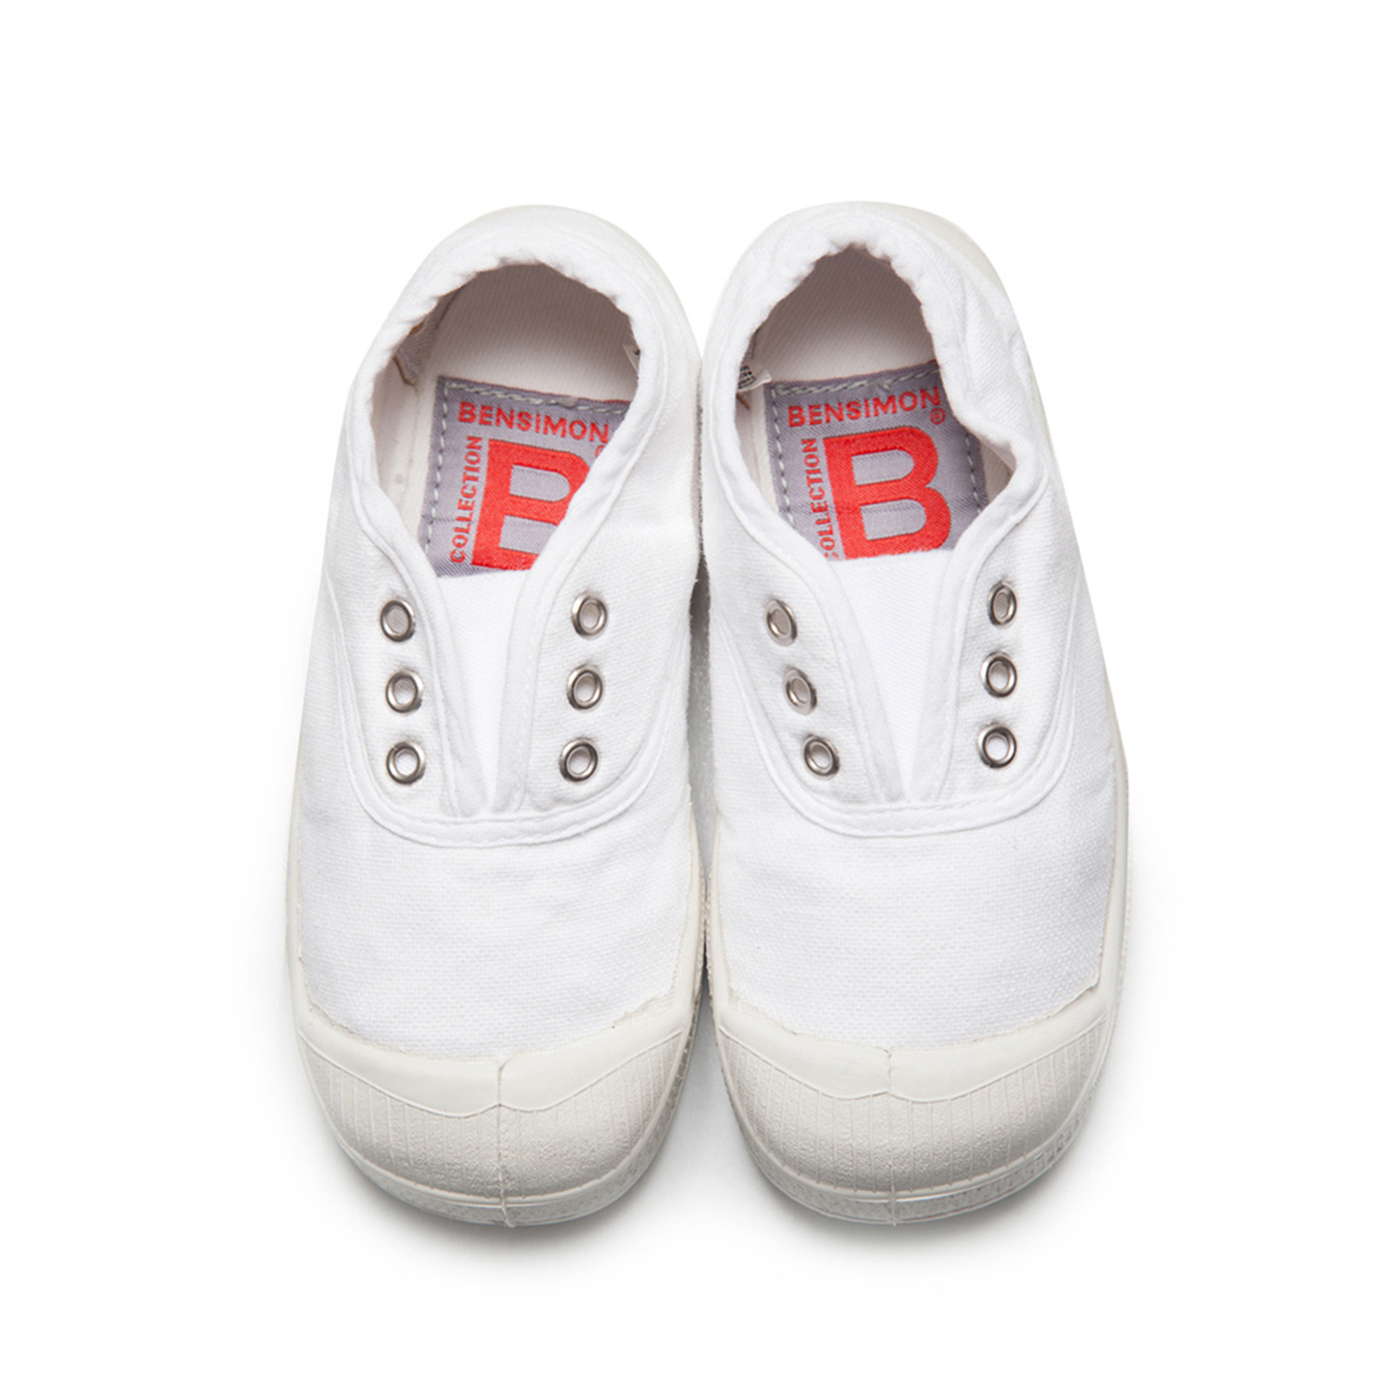  Bensimon Elly Çocuk Spor Ayakkabı  | Blanc